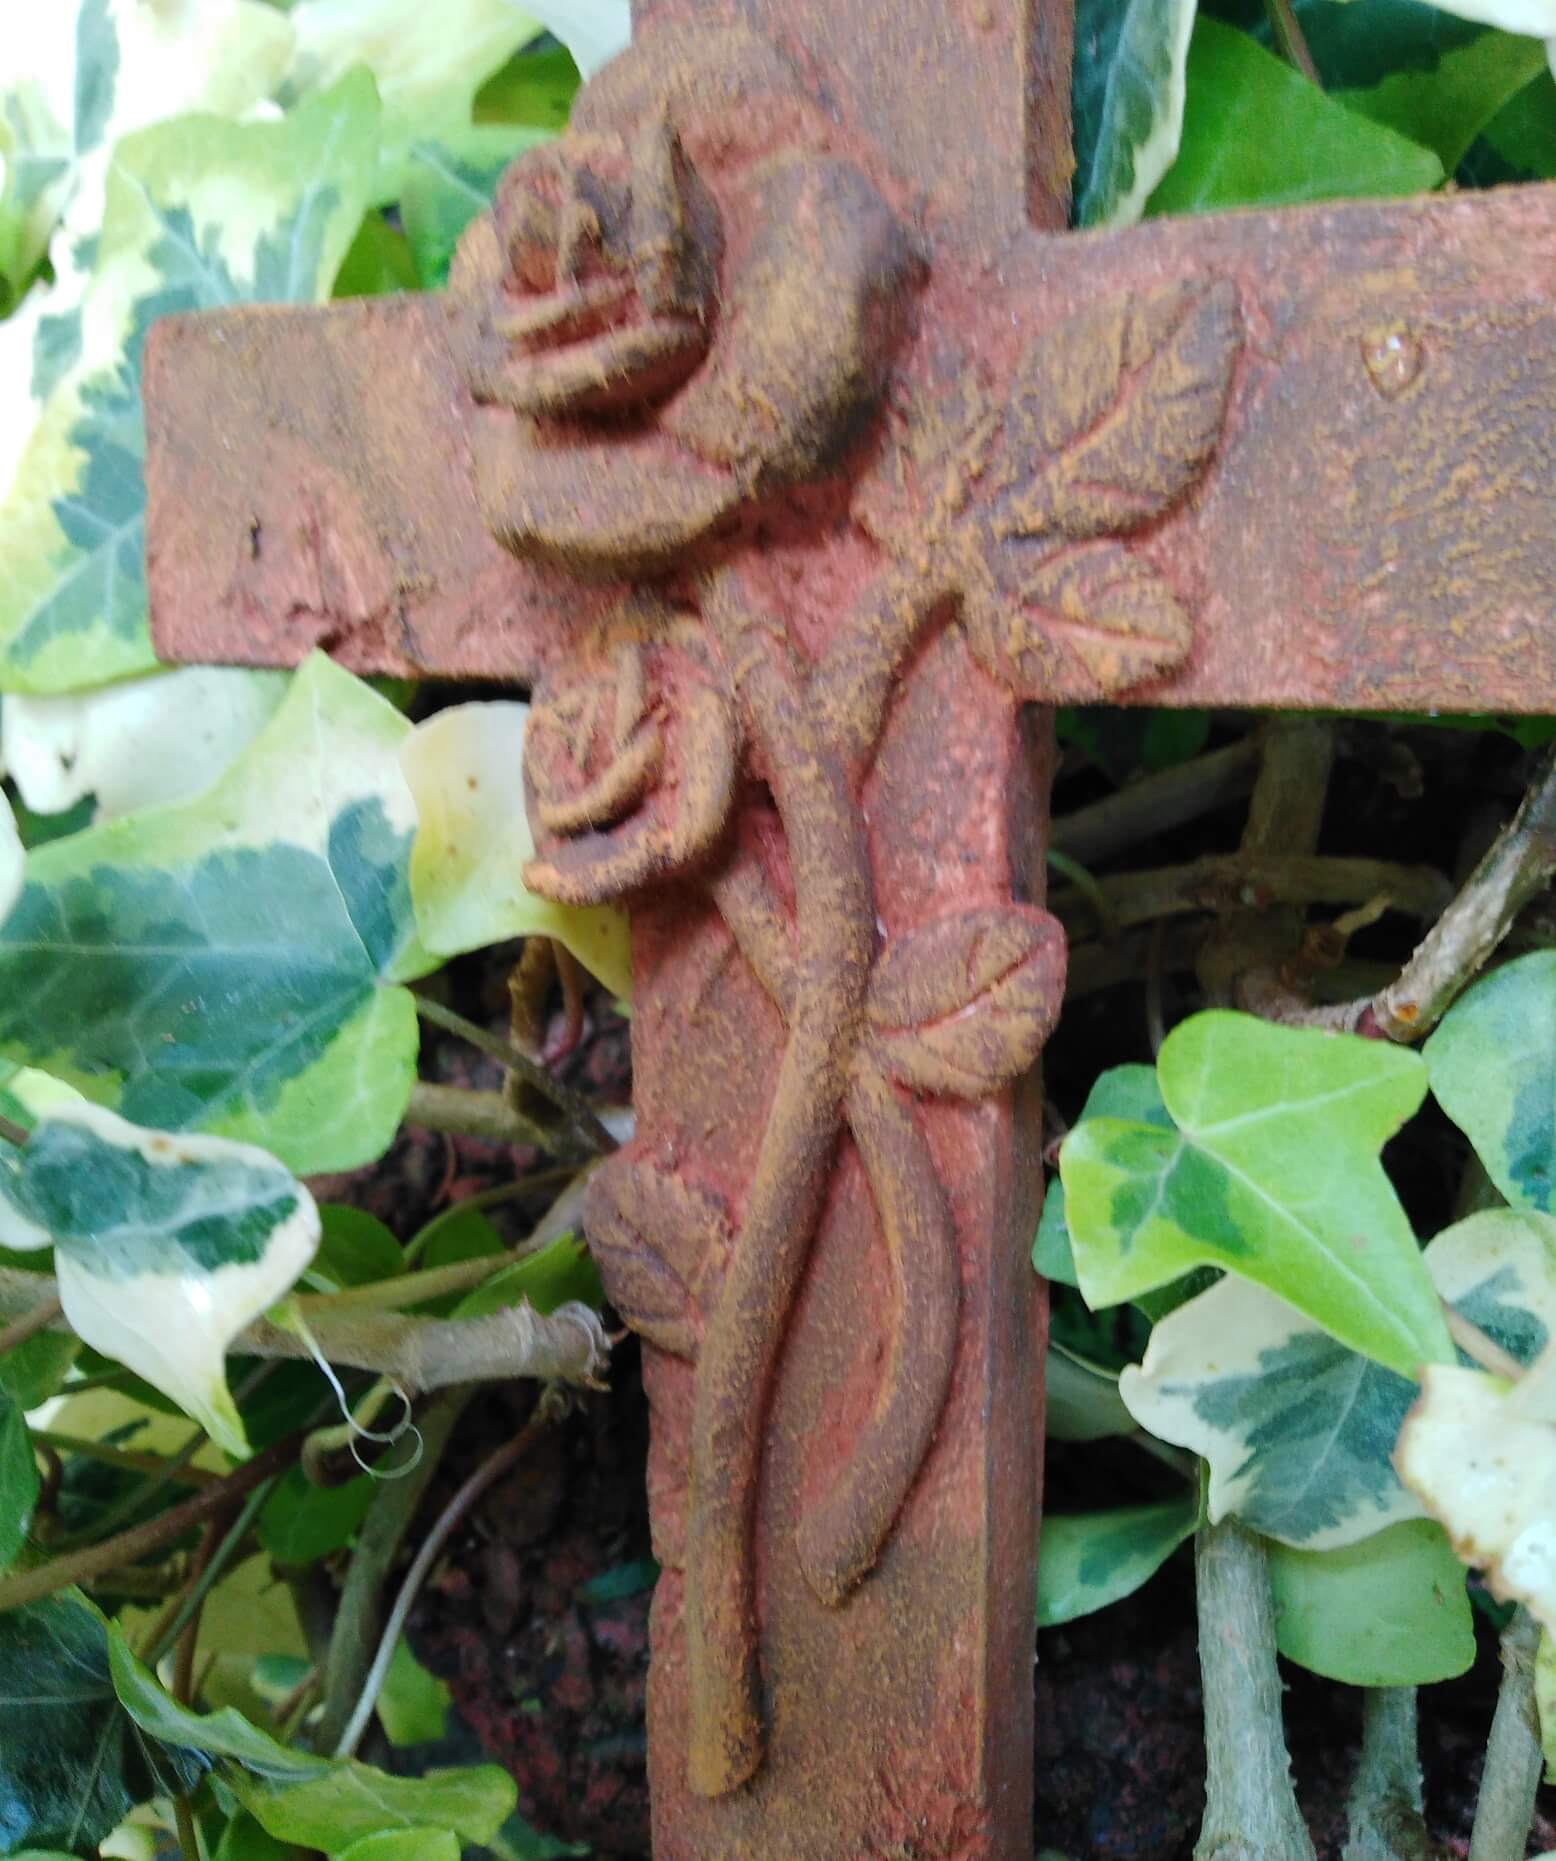 Kreuz mit 3D Rosen Rost- Metall Optik Design Grabengel Gedenkstein Grabschmuck Grabdeko